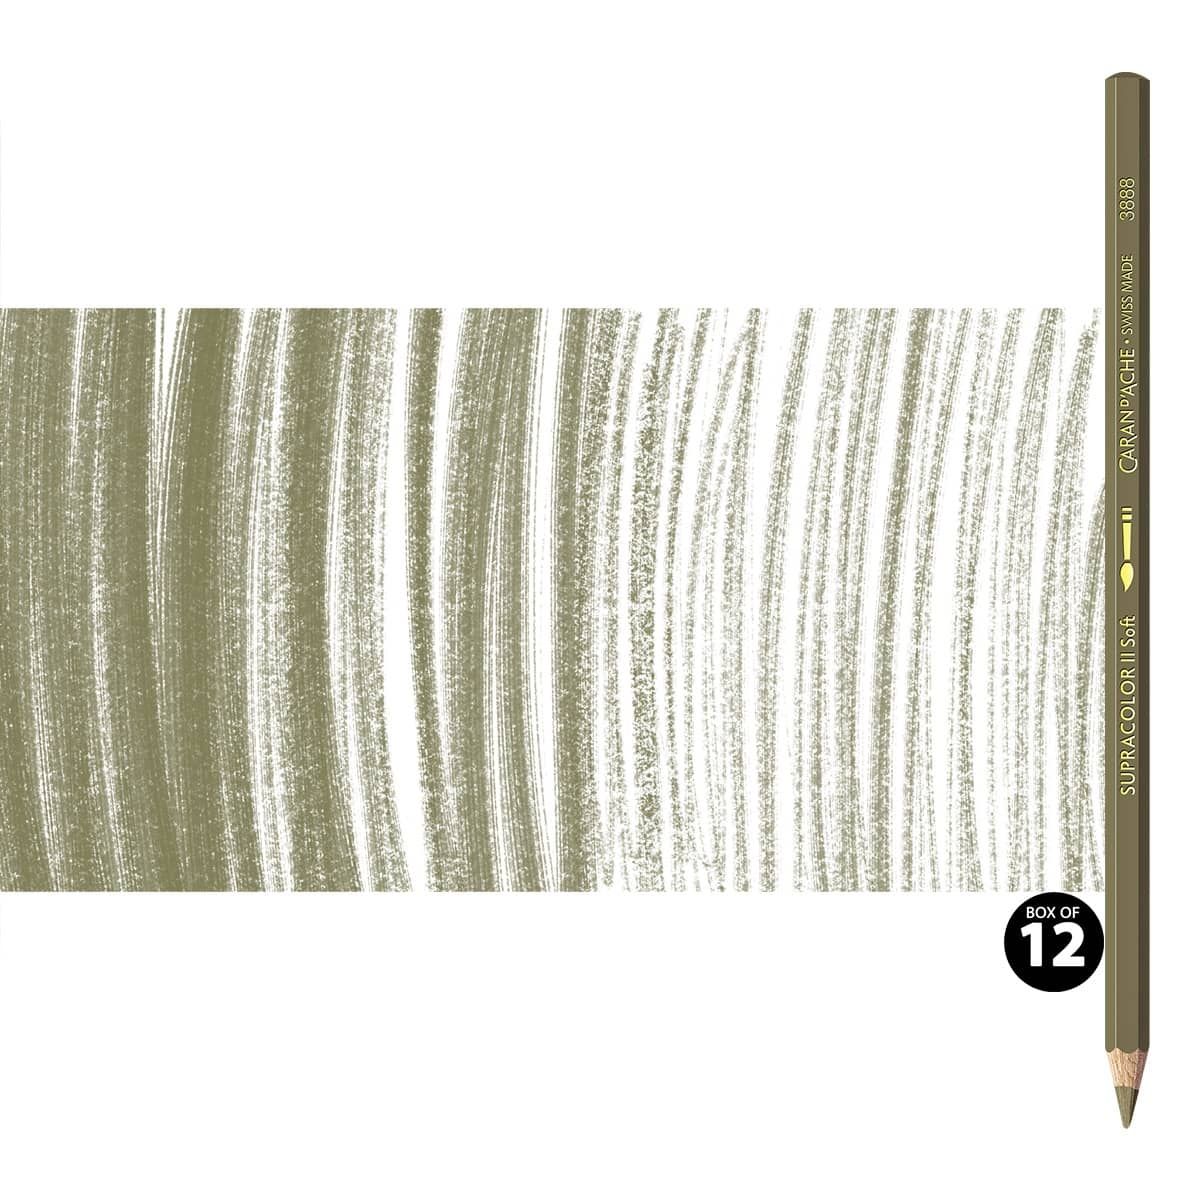 Supracolor II Watercolor Pencils Box of 12 No. 039 - Olive Brown